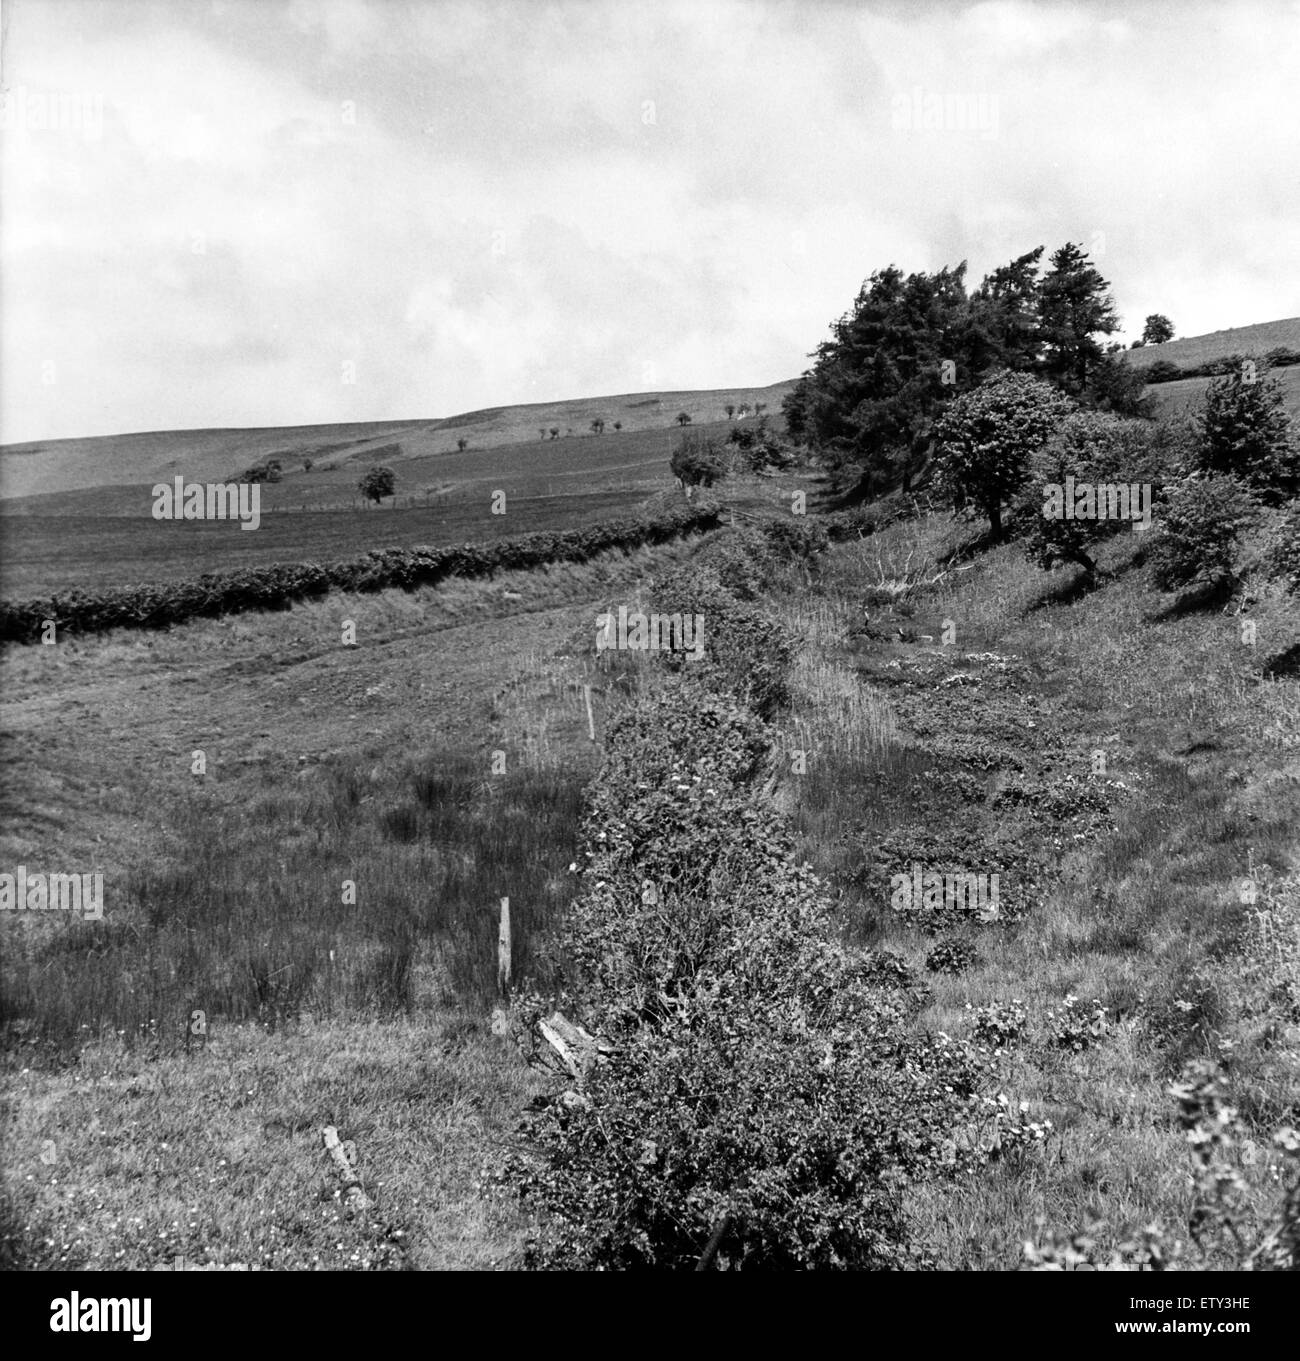 Offa's Dyke est un gros terrassement linéaire qui suit plus ou moins la frontière actuelle entre l'Angleterre et au Pays de Galles. Jusqu'à la pente à Llanfair colline au-dessus de Knighton. Vers 1950. Banque D'Images